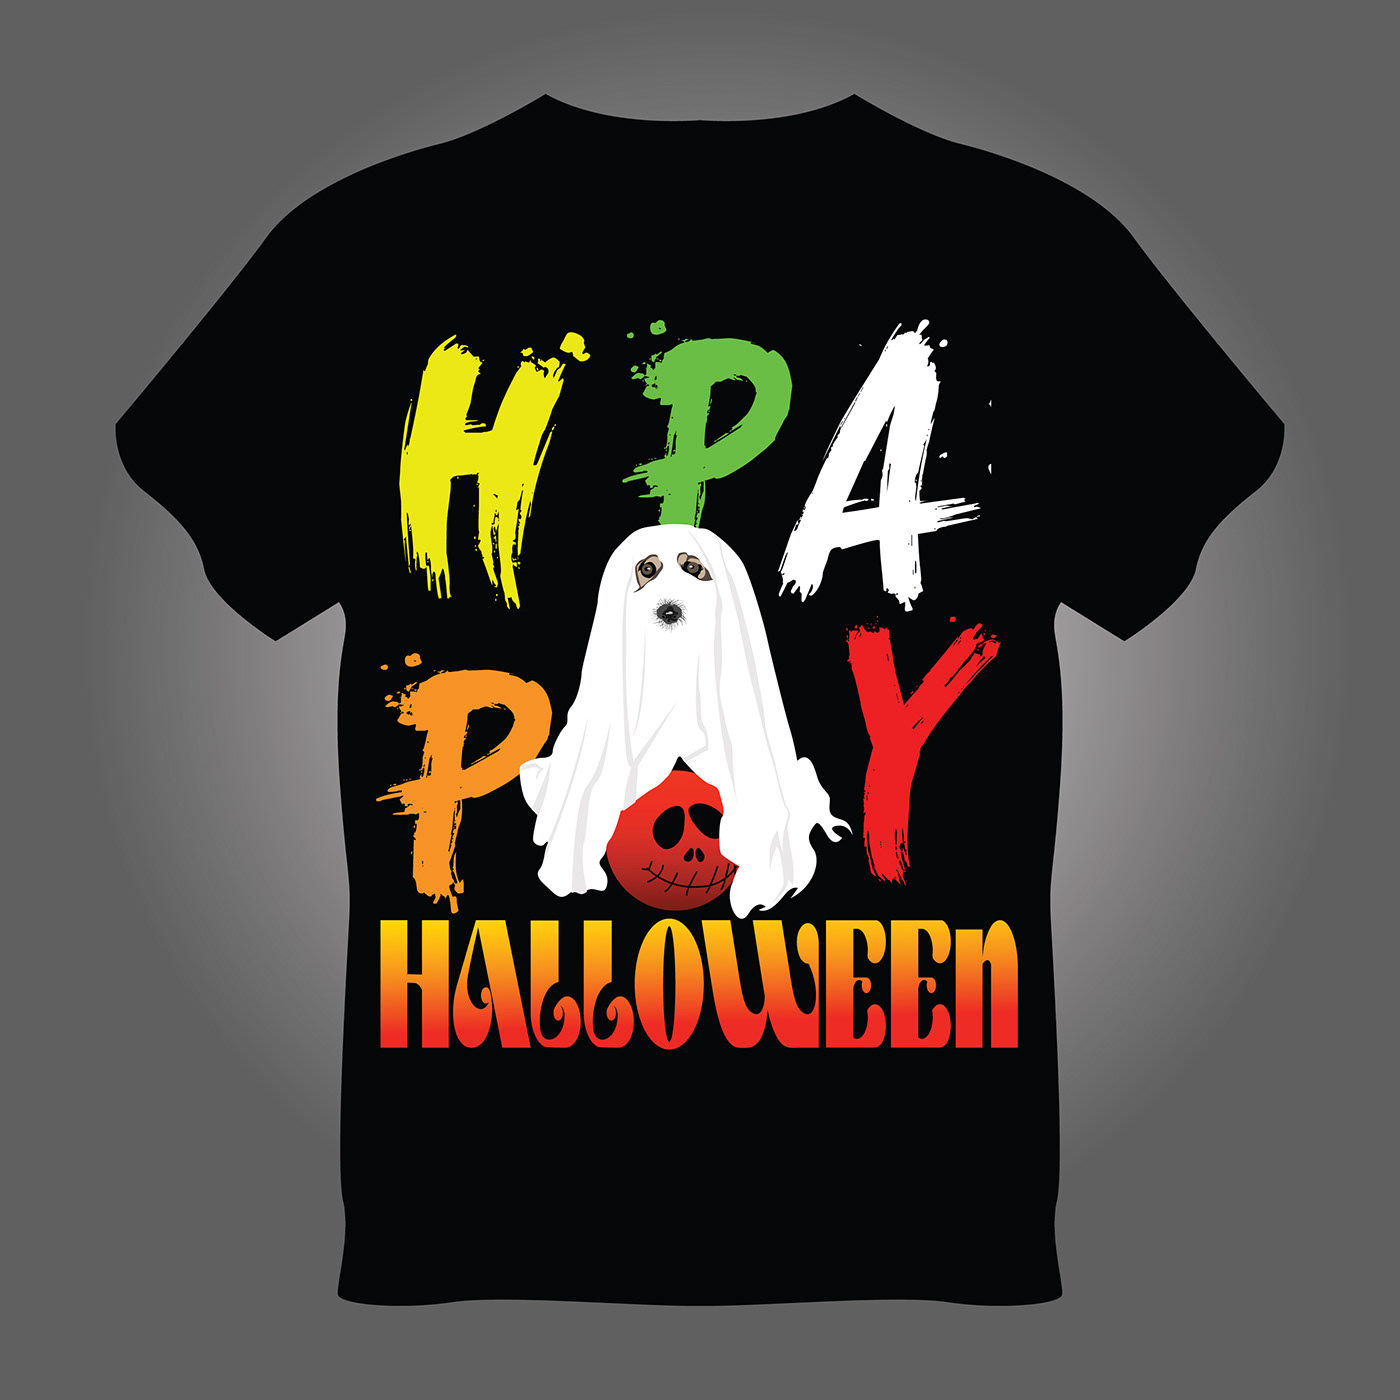 Halloween T-Shirt design Halloween party pumpkin t shirt design T Shirt typography   vector ILLUSTRATION  art